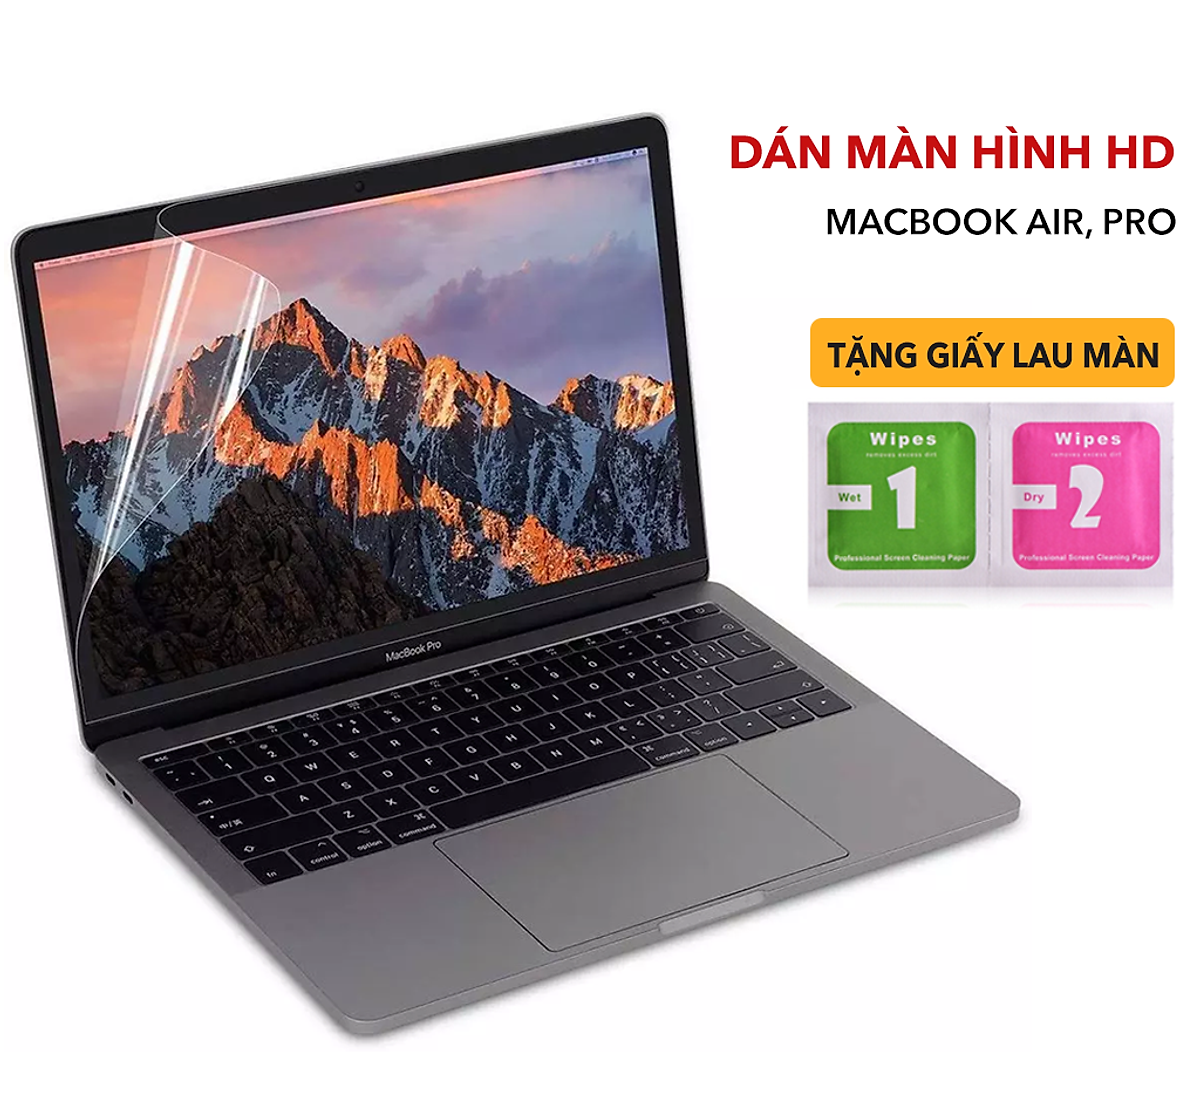 Miếng Dán Màn Hình Macbook đủ dòng - Dán Macbook Air, Macbook Pro - Hàng Nhập Khẩu